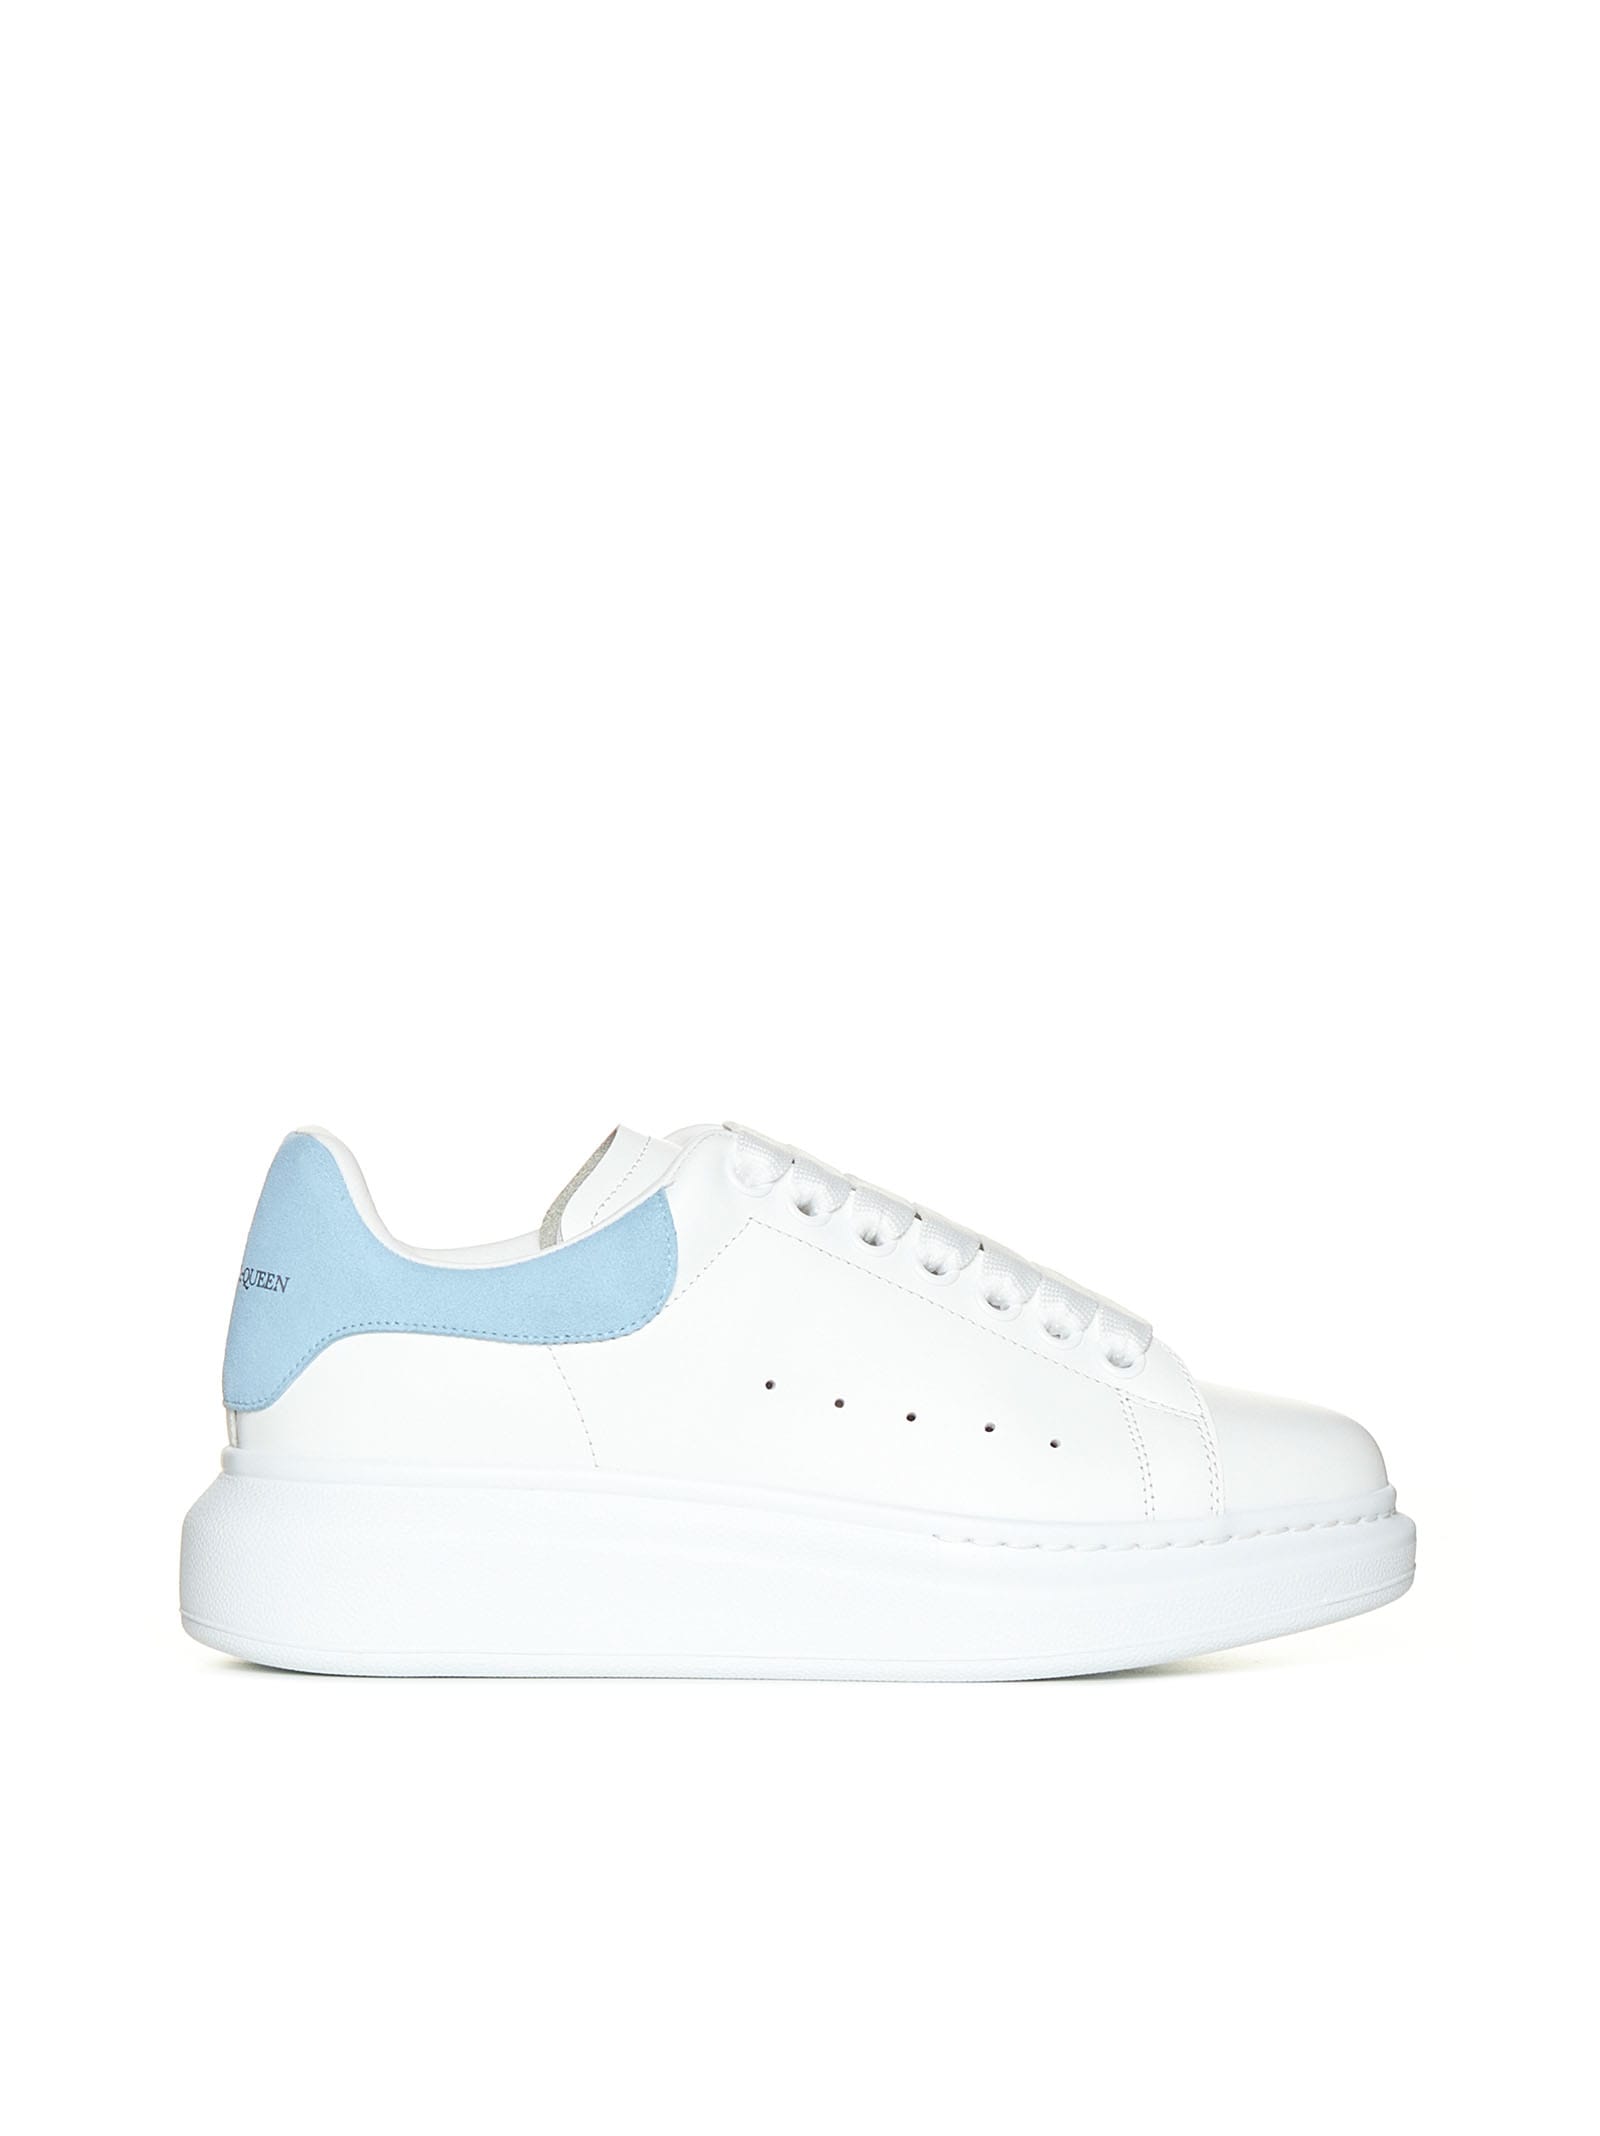 Alexander McQueen Sneakers In Leather And Light Blue Heel